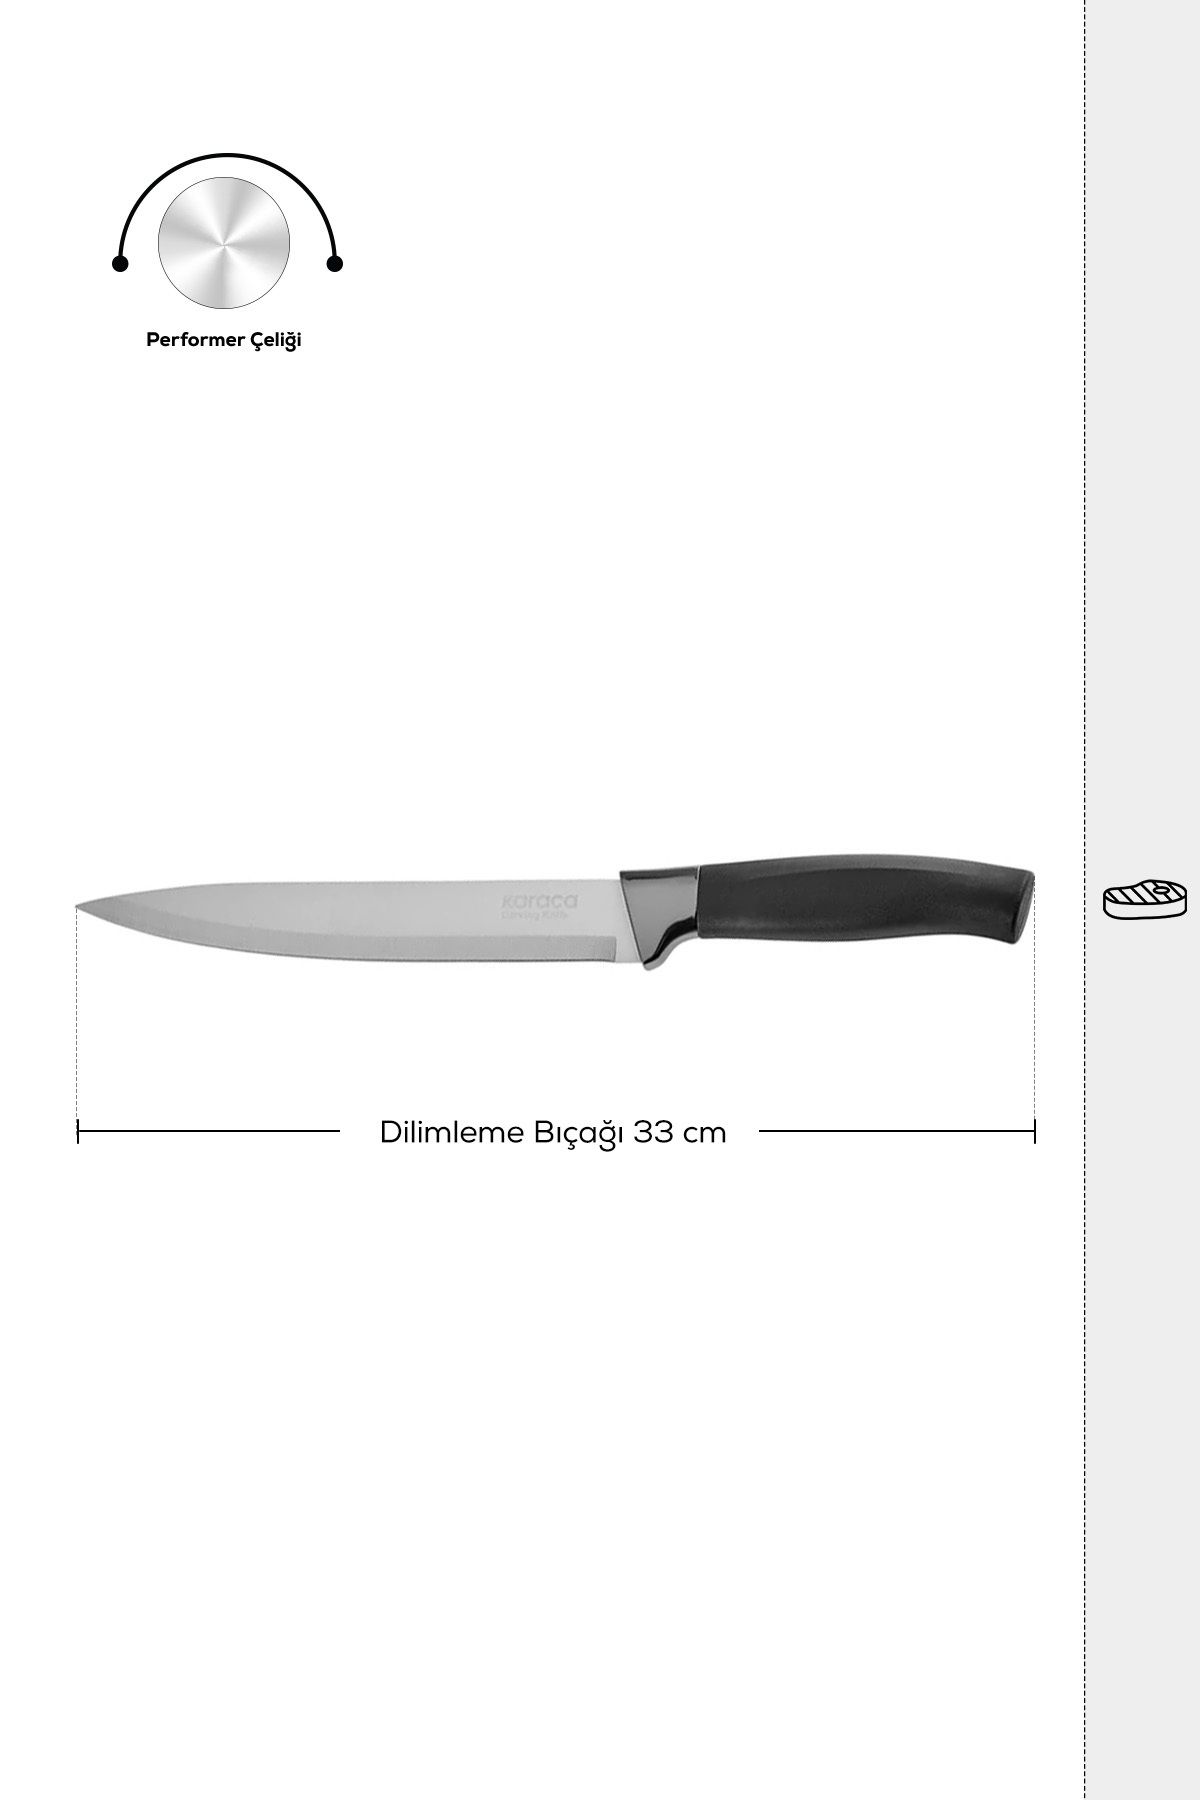 Karaca Helios Black Dilimleme Bıçağı 33 cm